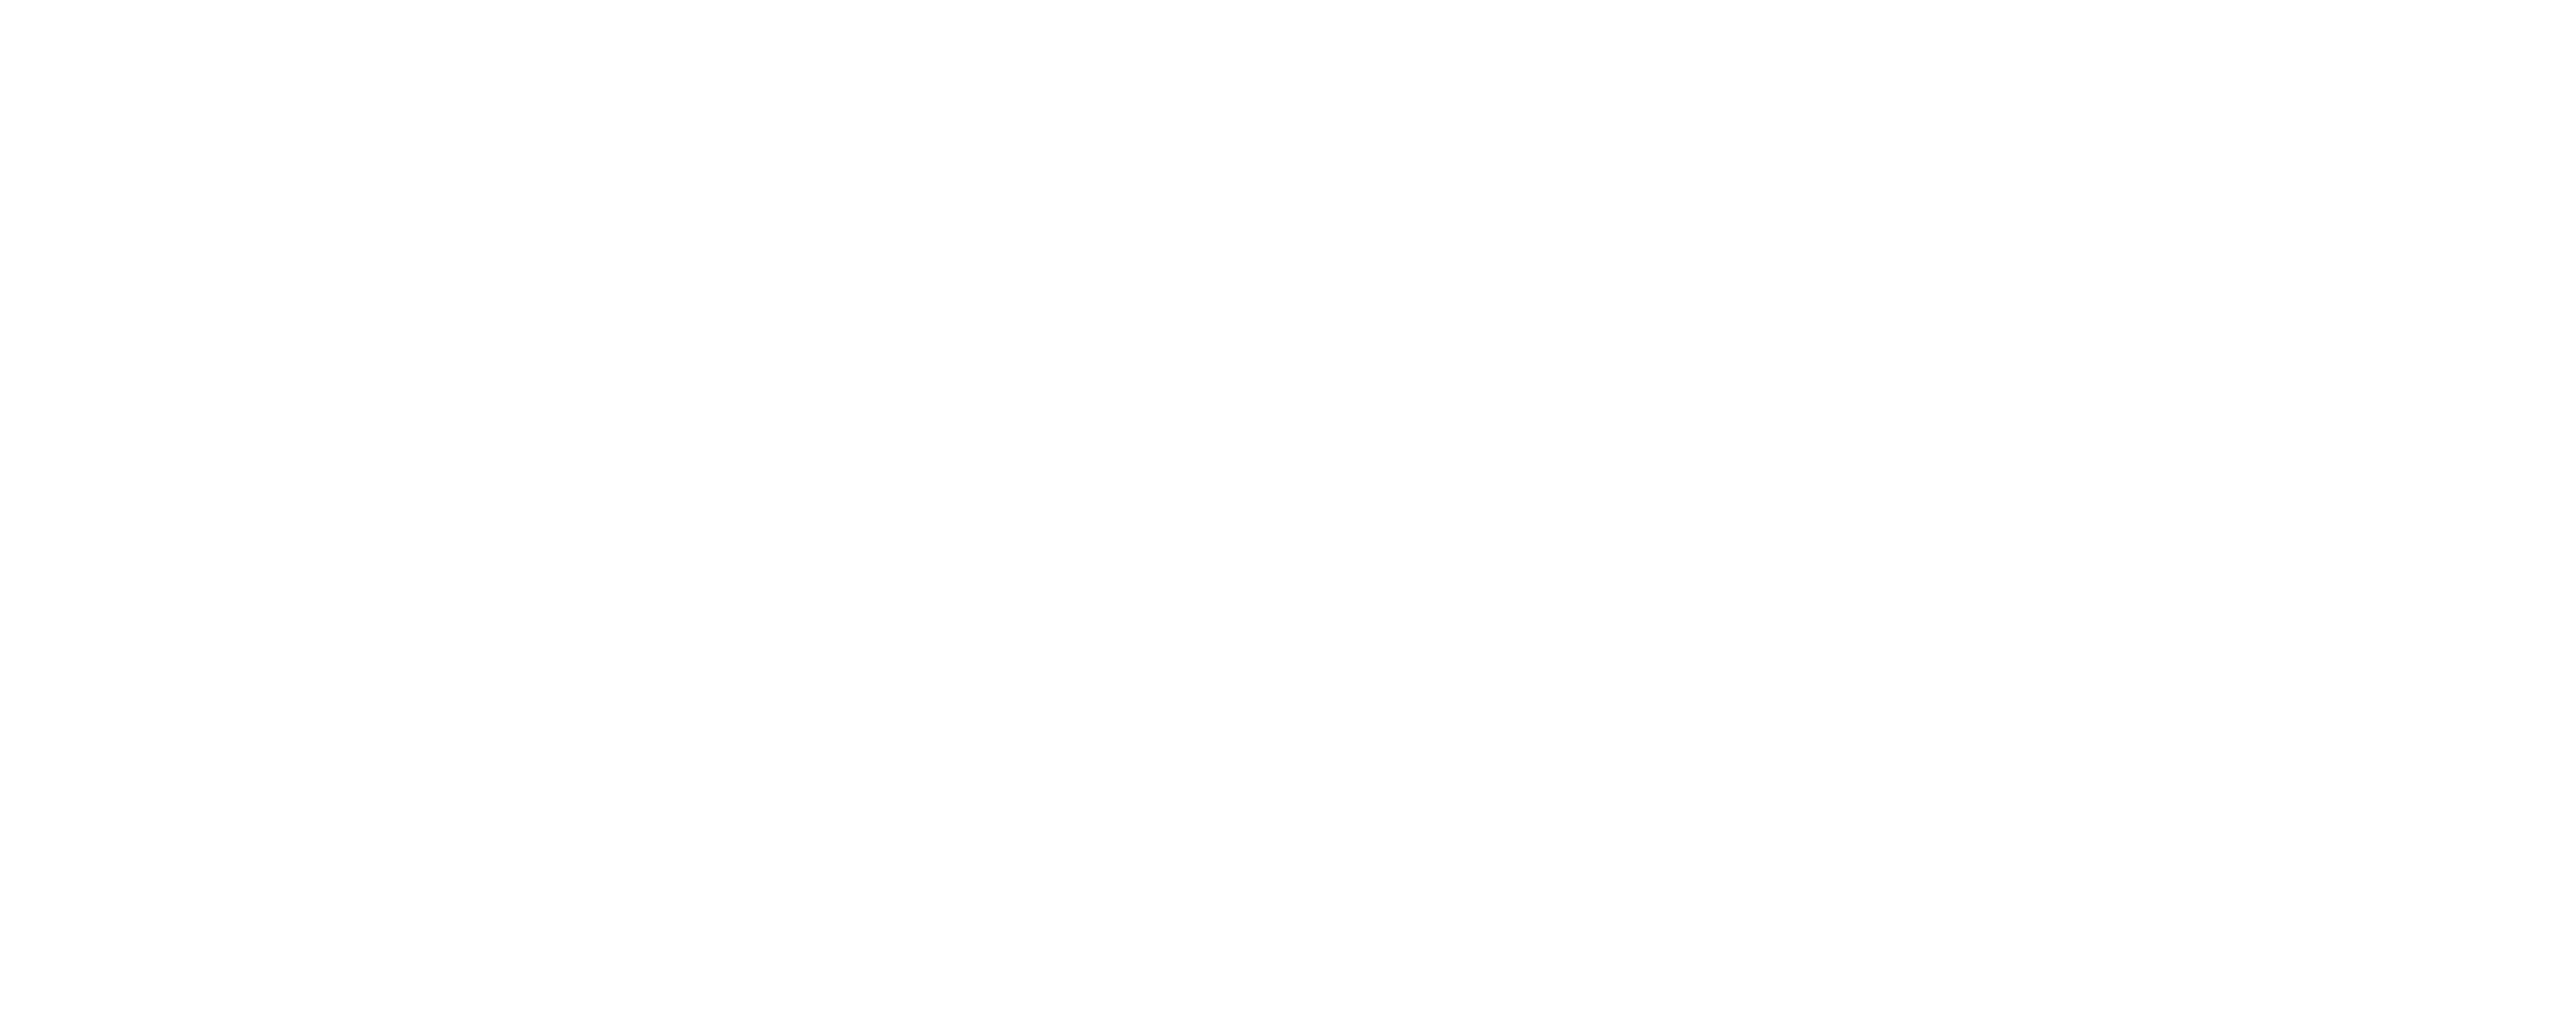 Strassdeal Logo